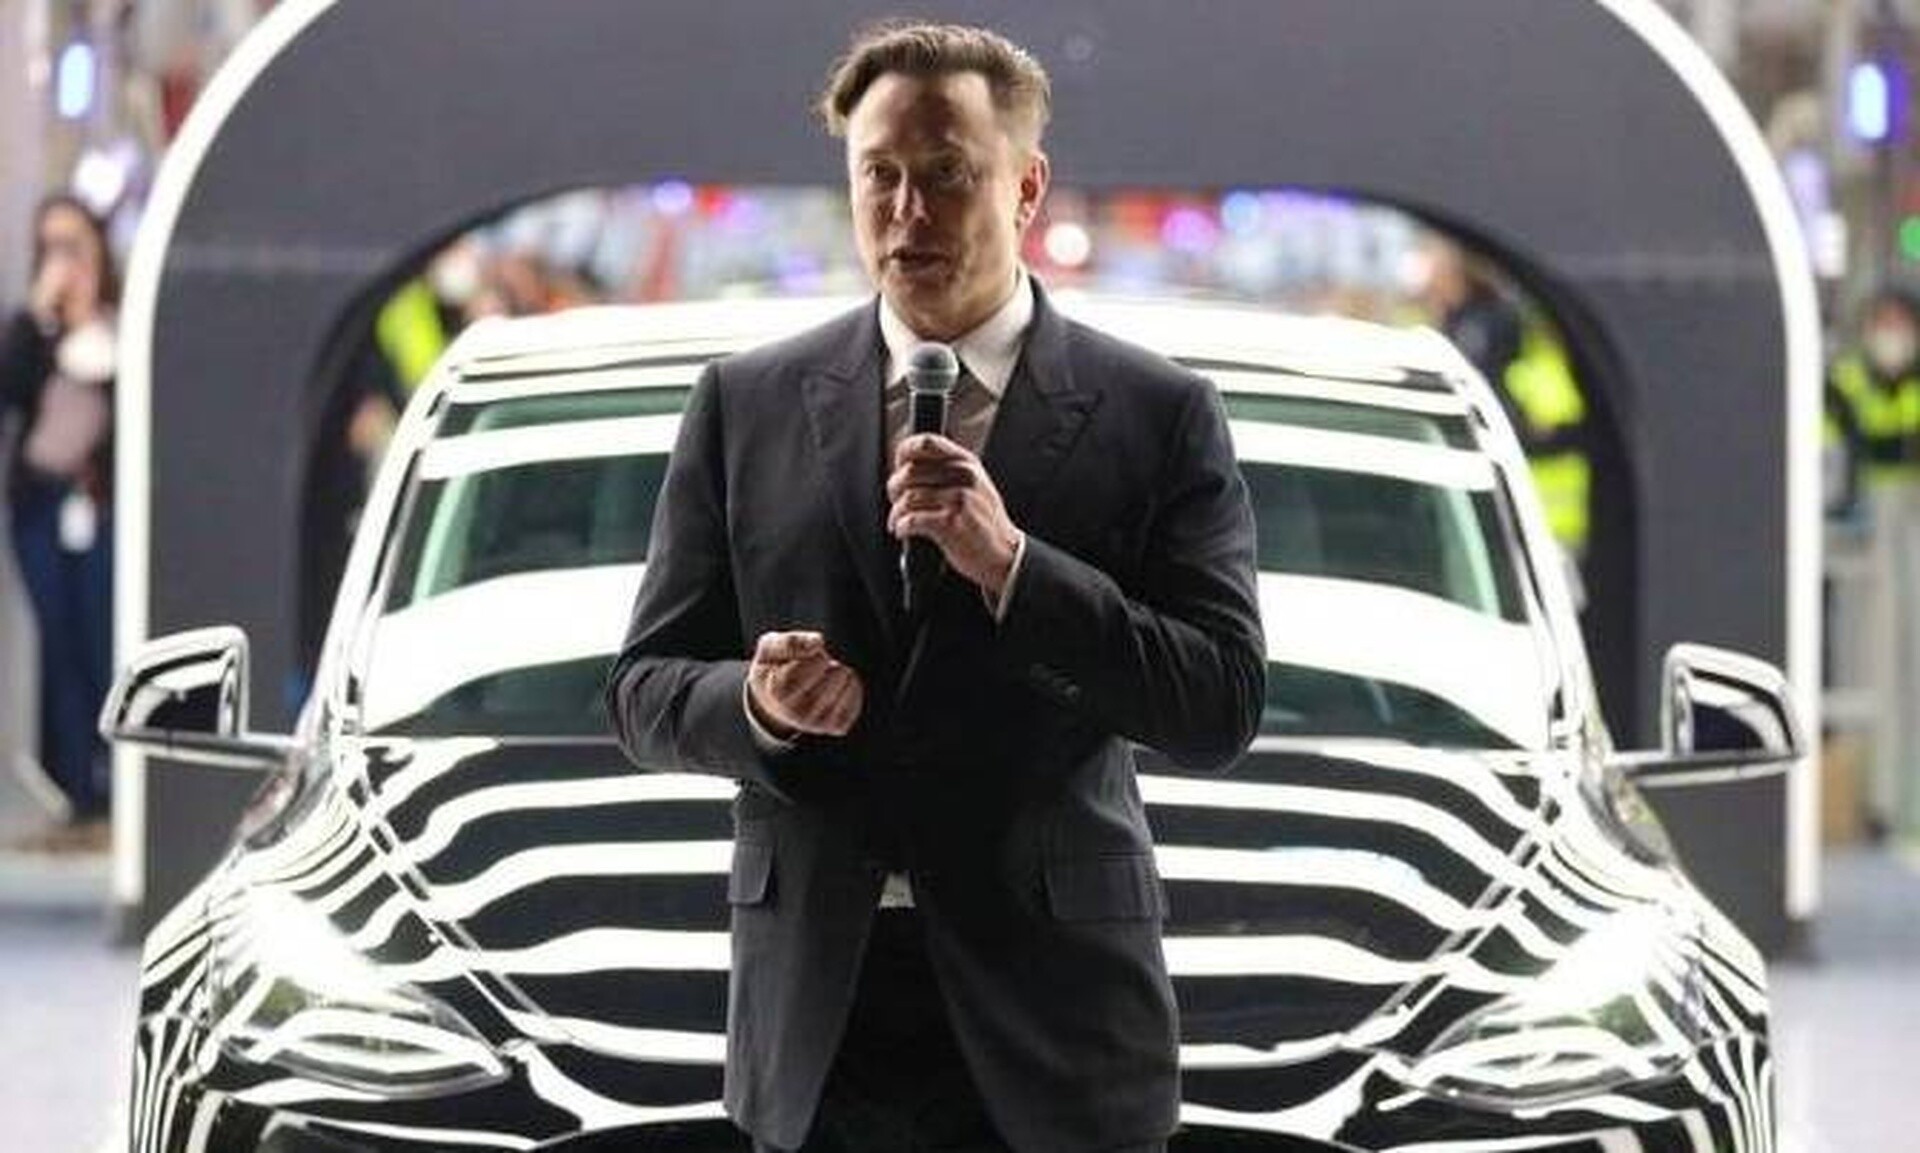 Ο Έλον Μασκ φέρνει επανάσταση στην αυτοκίνηση: Στις 8/8 παρουσιάζει το «ρομποταξί» της Tesla